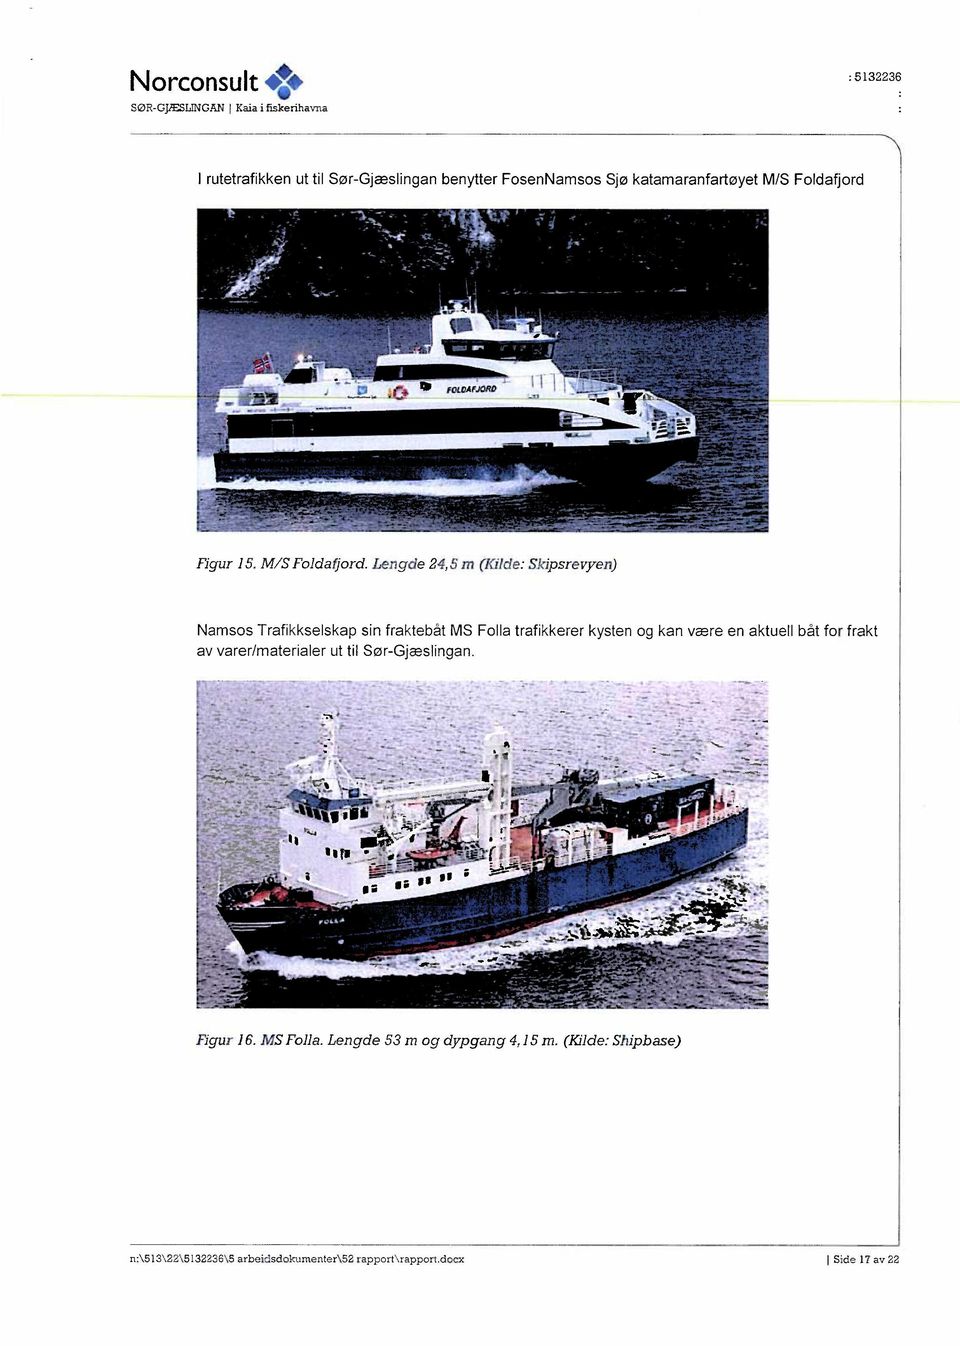 Lengde 24,5 m (Kilde: Skipsrevyen) Namsos Trafikkselskap sin fraktebåt MS Folla trafikkerer kysten og kan være en aktuell båt